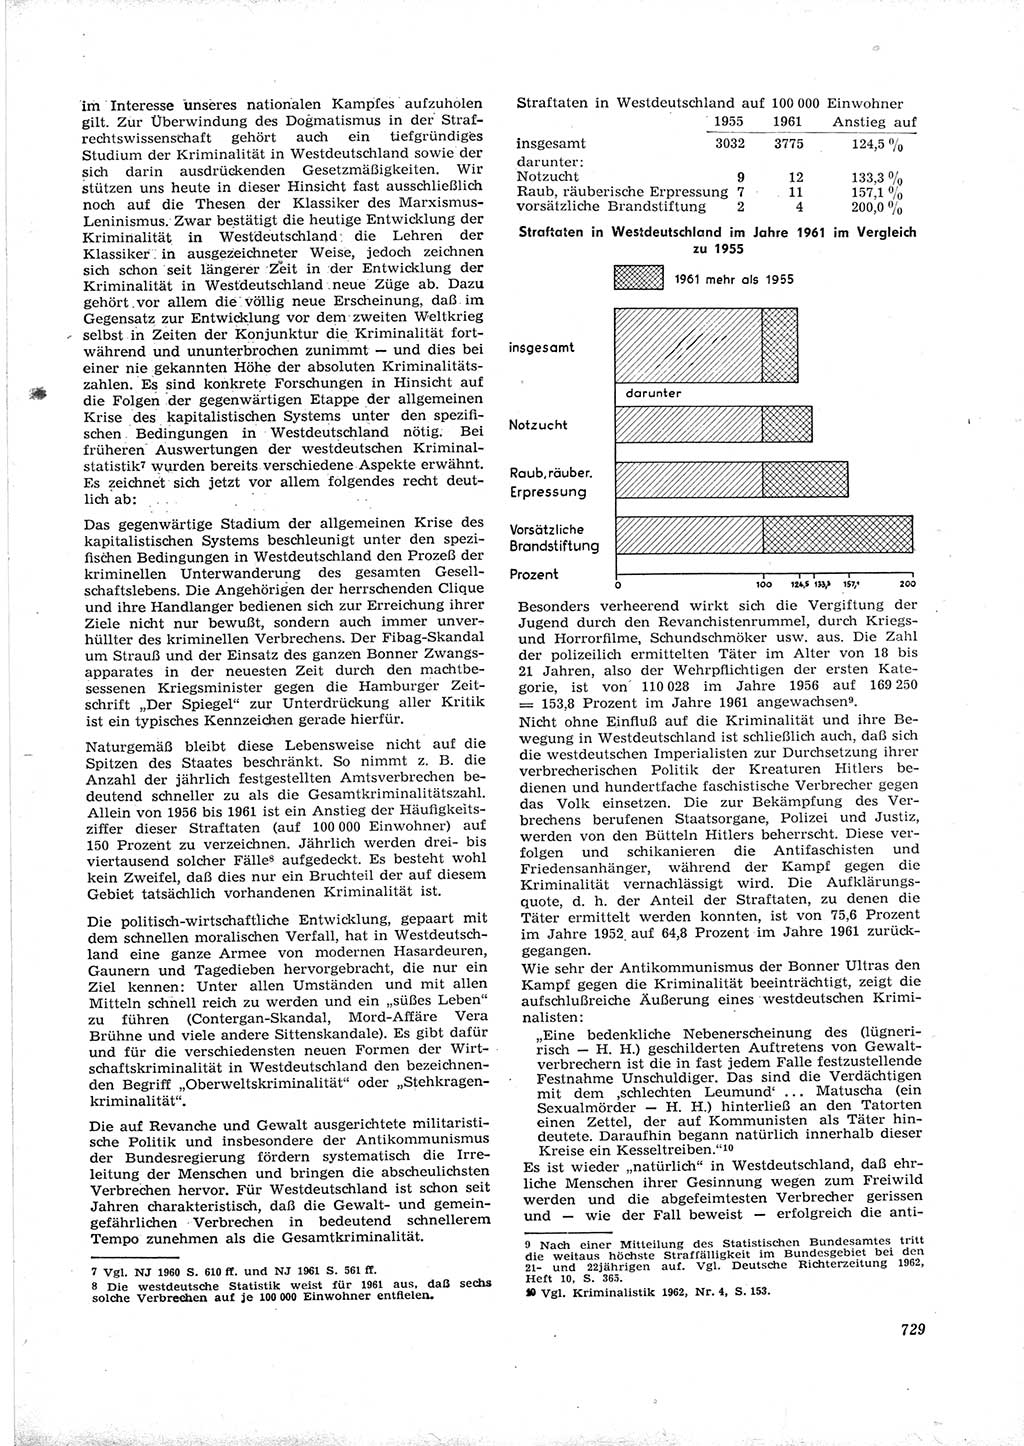 Neue Justiz (NJ), Zeitschrift für Recht und Rechtswissenschaft [Deutsche Demokratische Republik (DDR)], 16. Jahrgang 1962, Seite 729 (NJ DDR 1962, S. 729)